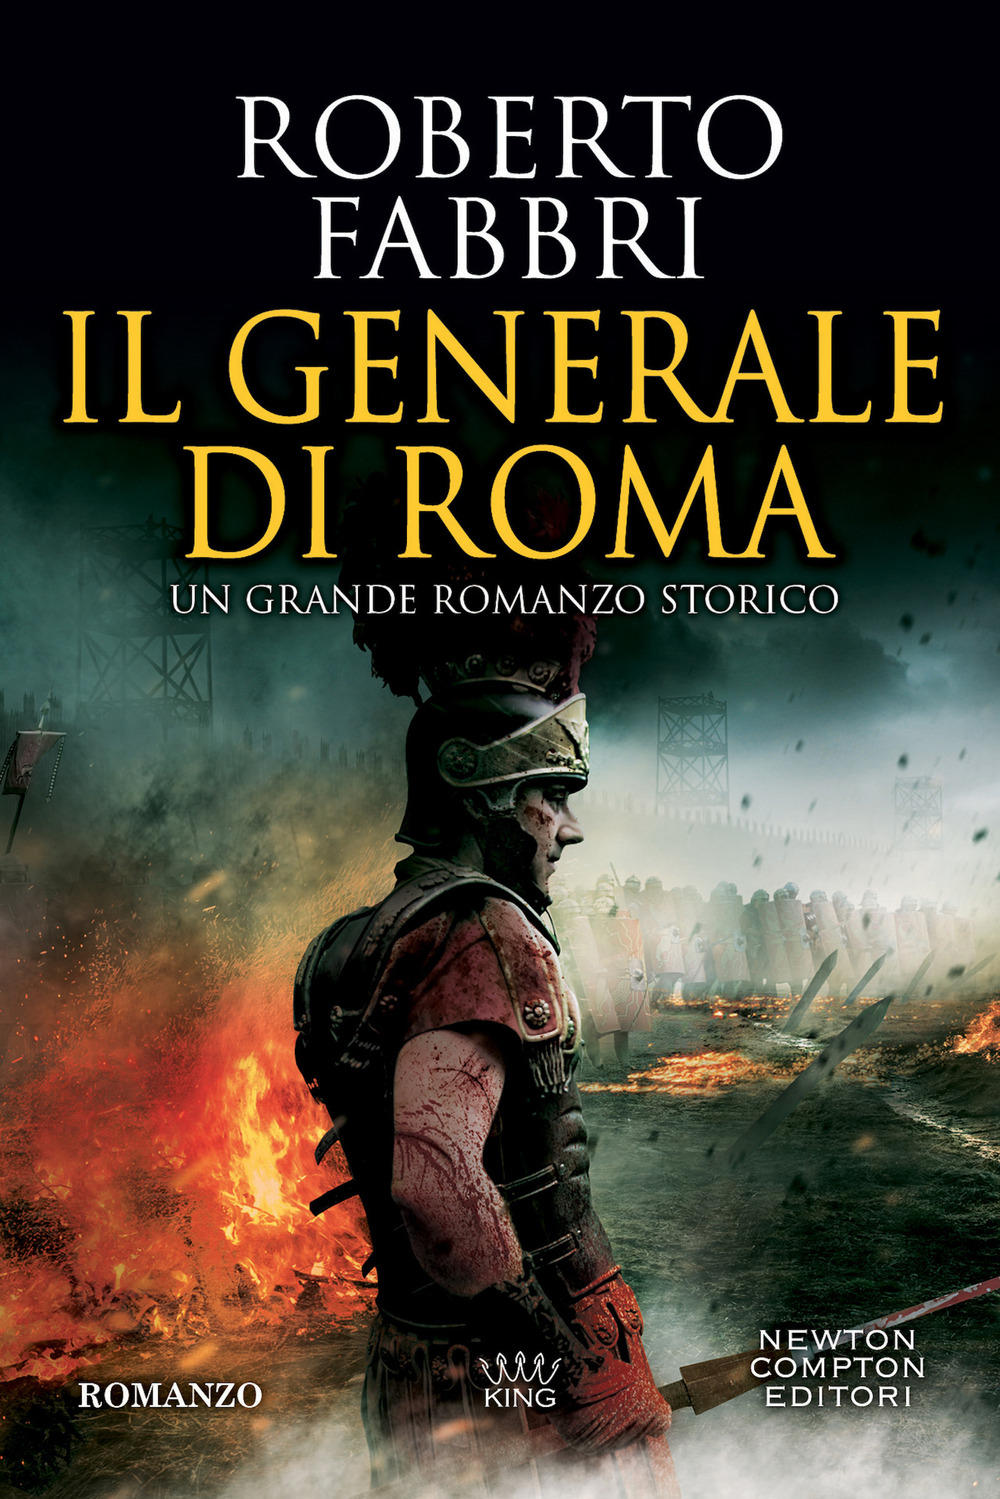 Il generale di Roma